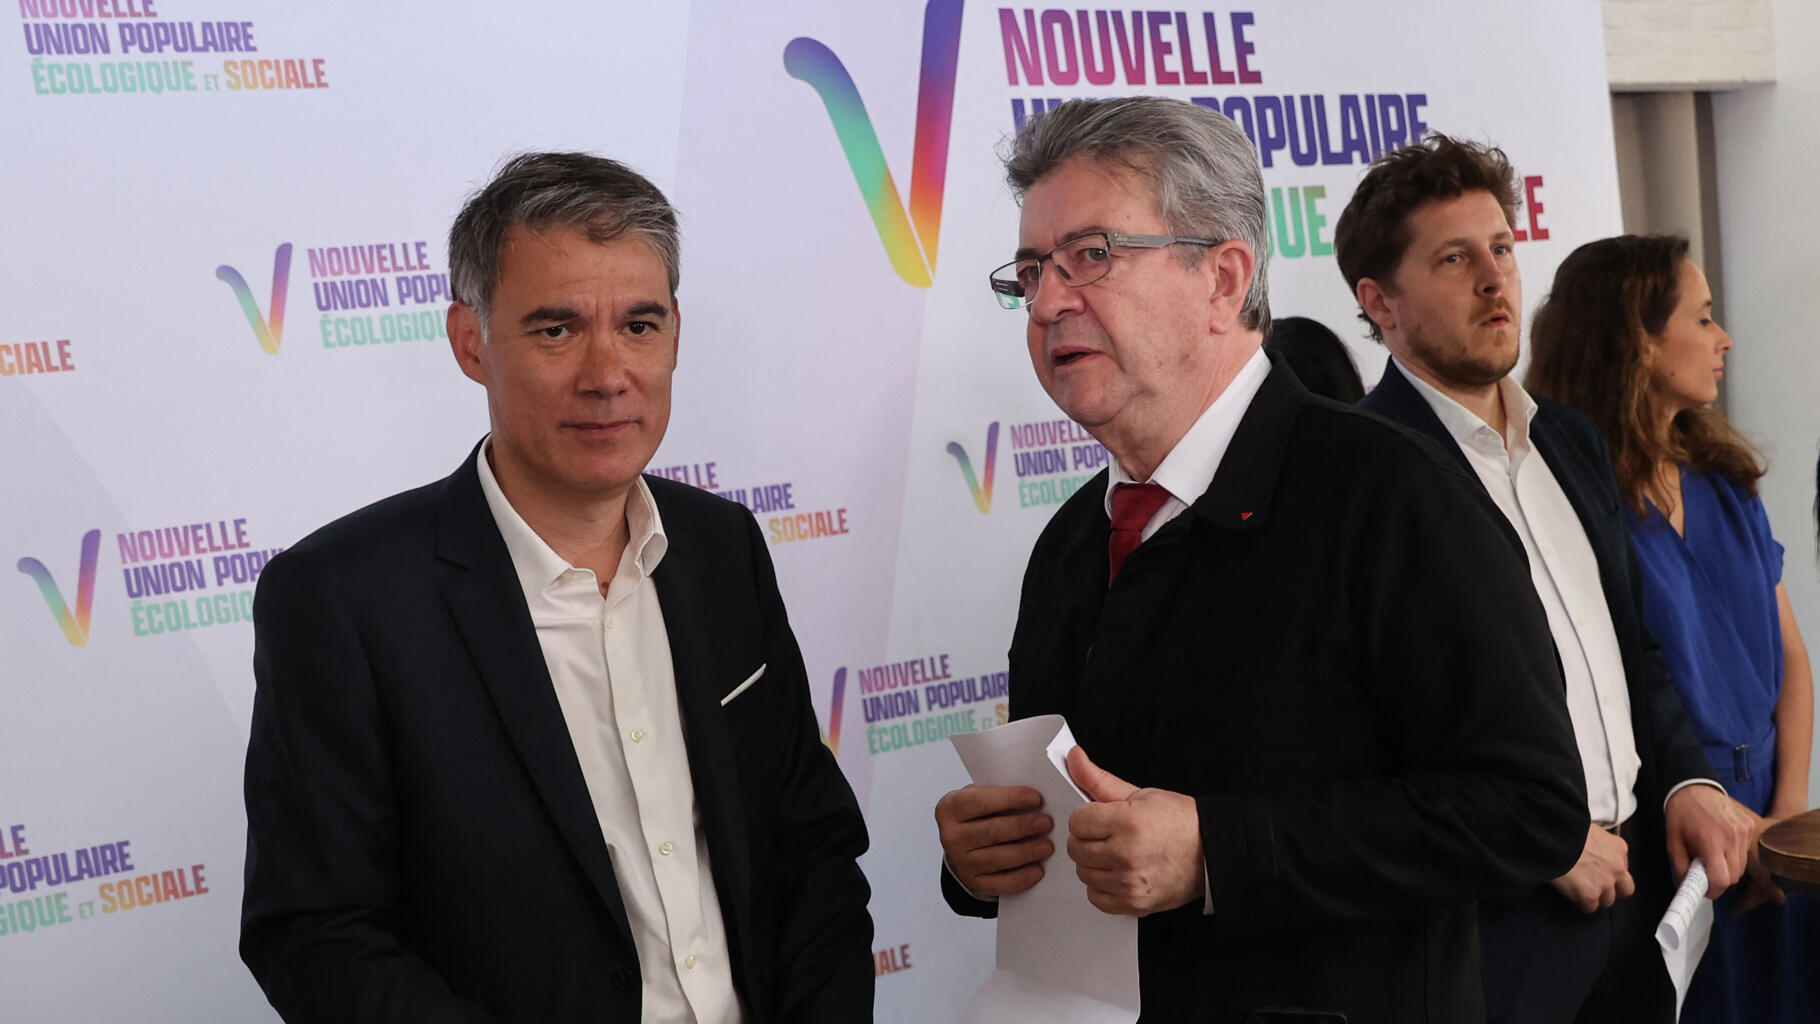 "Là Jean-Luc tu peux faire mieux" : Faure reprend Mélenchon après une "provocation"